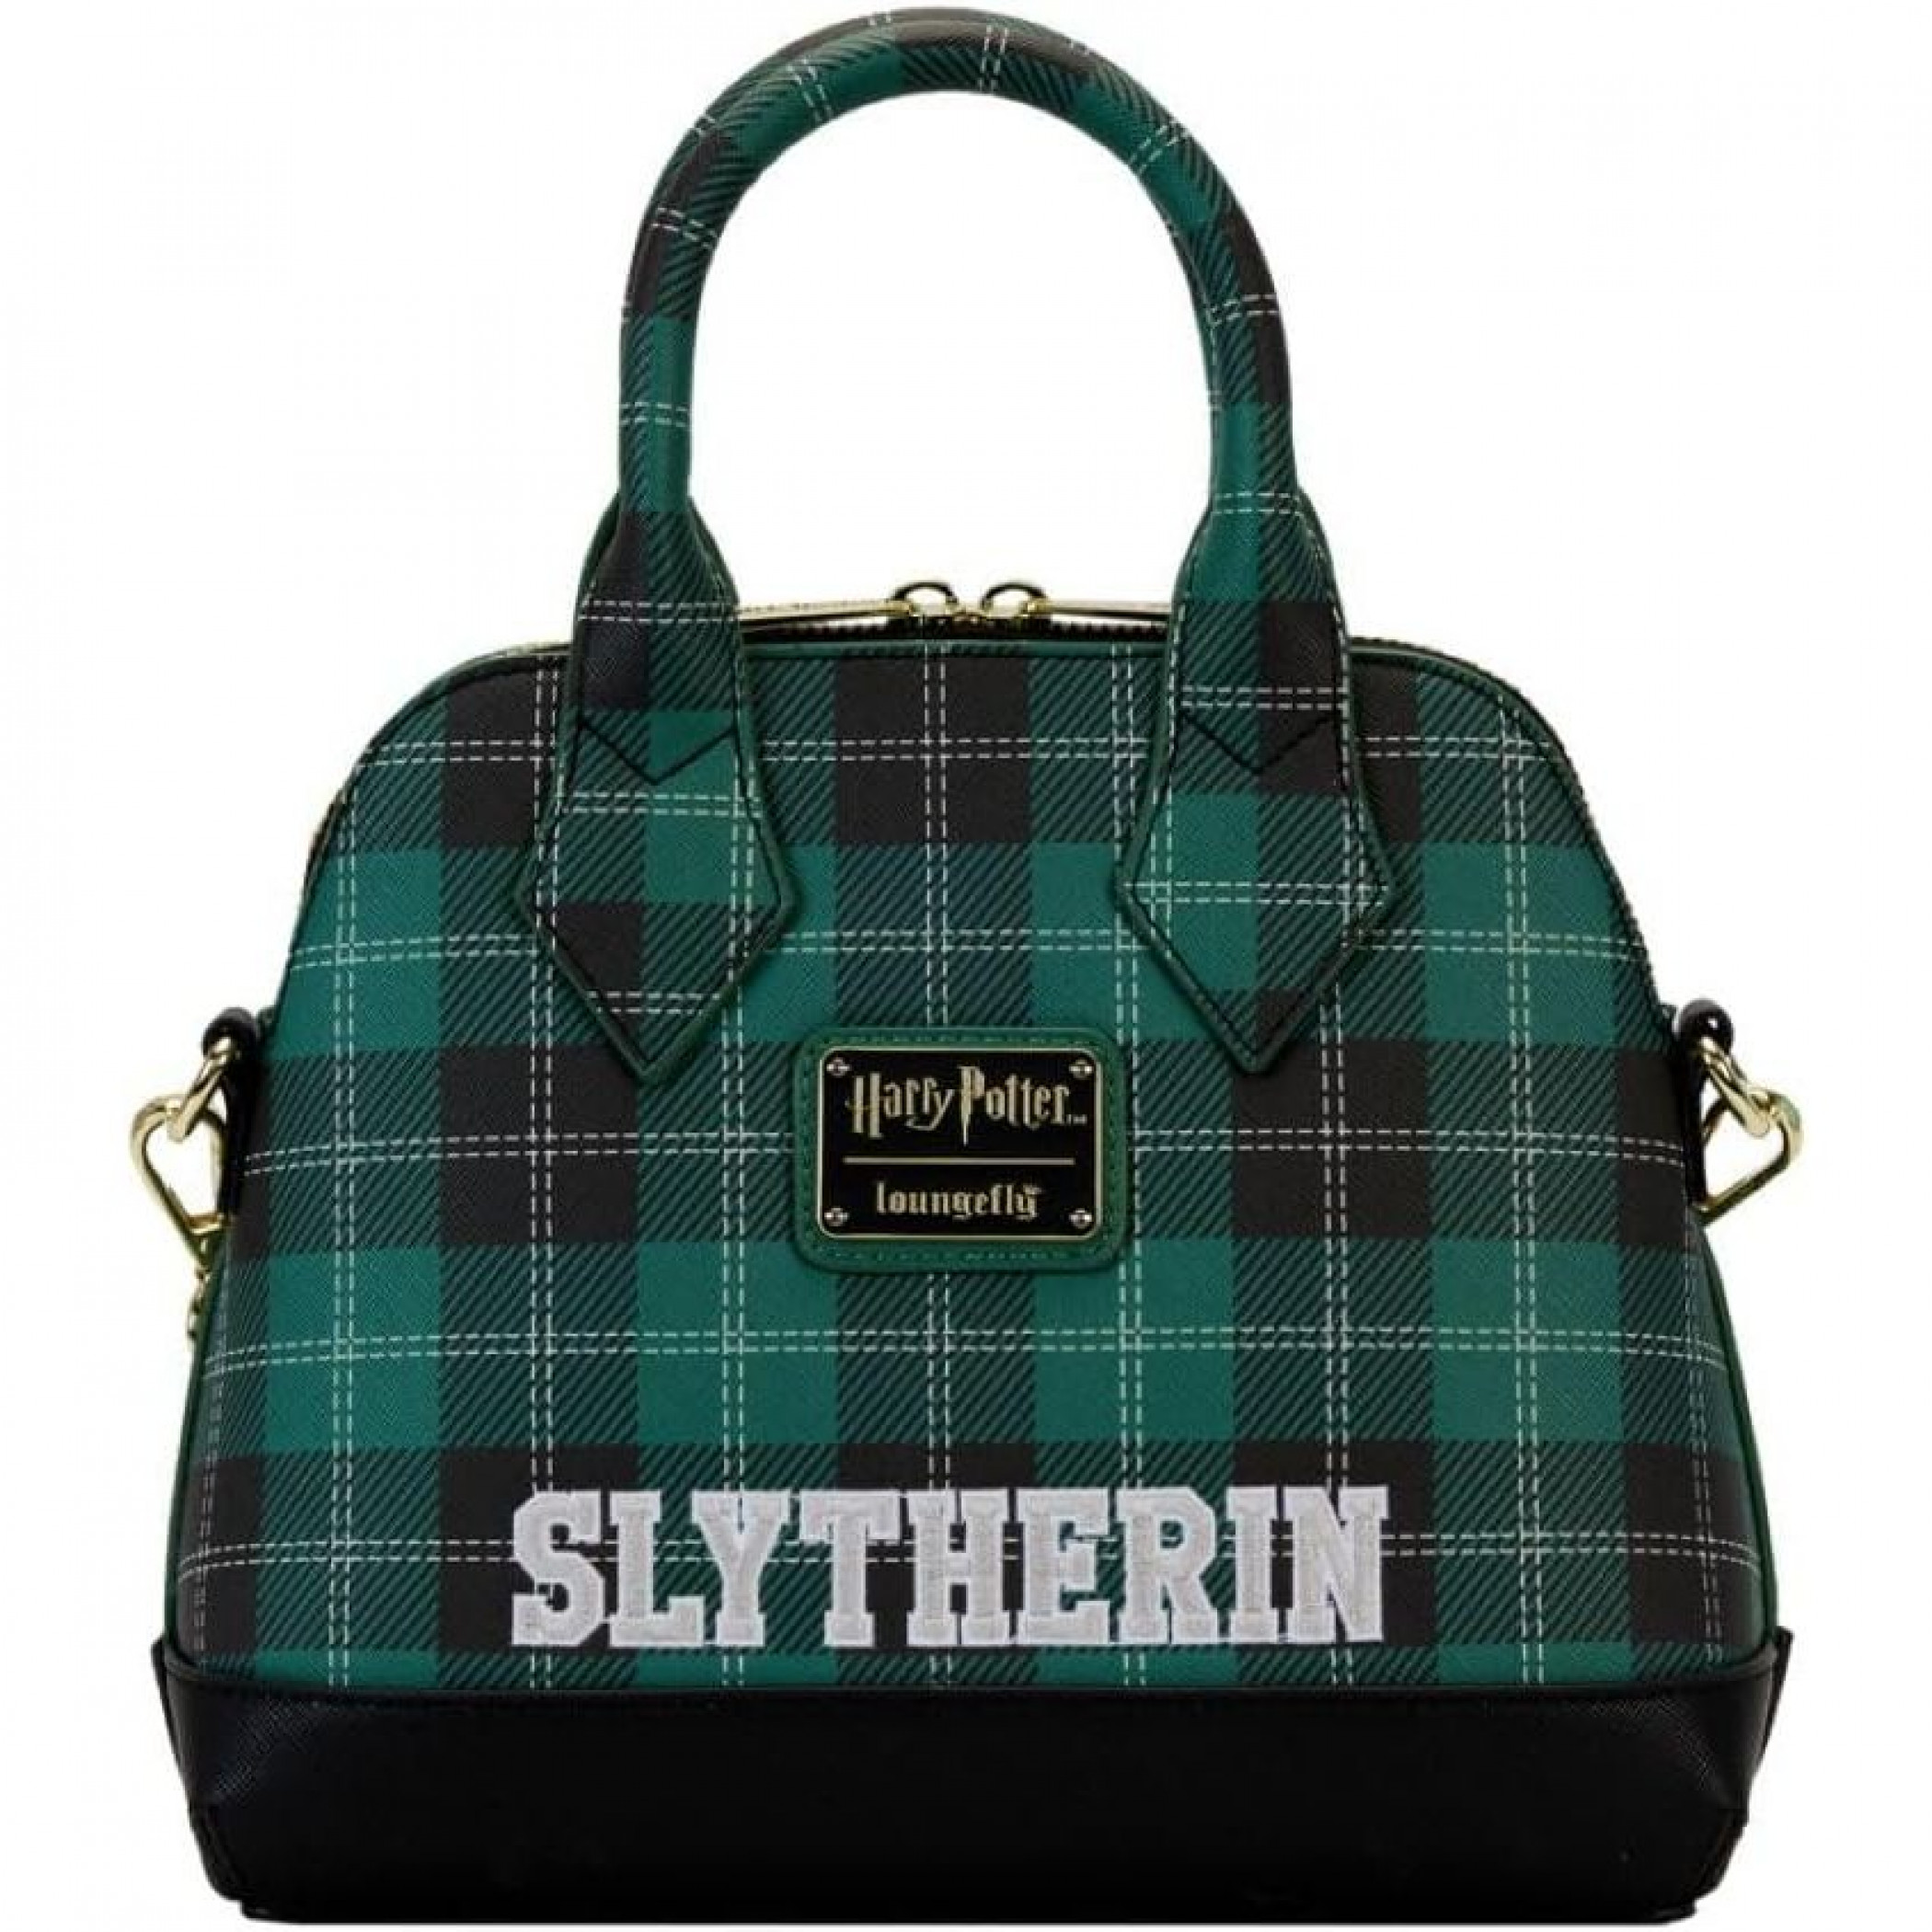 Harry Potter Slytherin Varsity Crossbody Bag by Loungefly